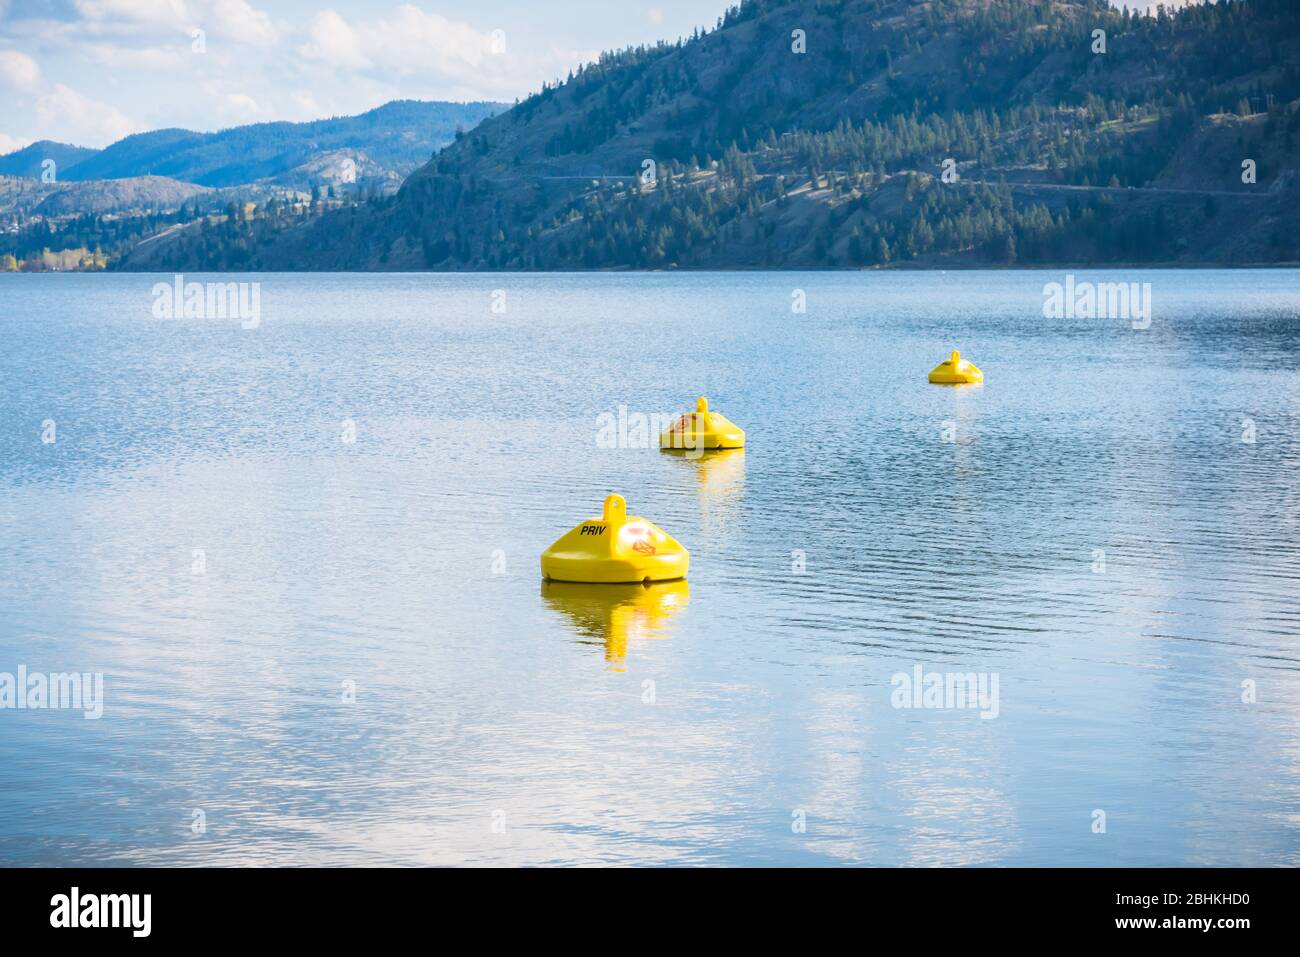 Boyas amarillas que marcan zonas peligrosas con corrientes peligrosas en el lago, donde no se permite nadar Foto de stock